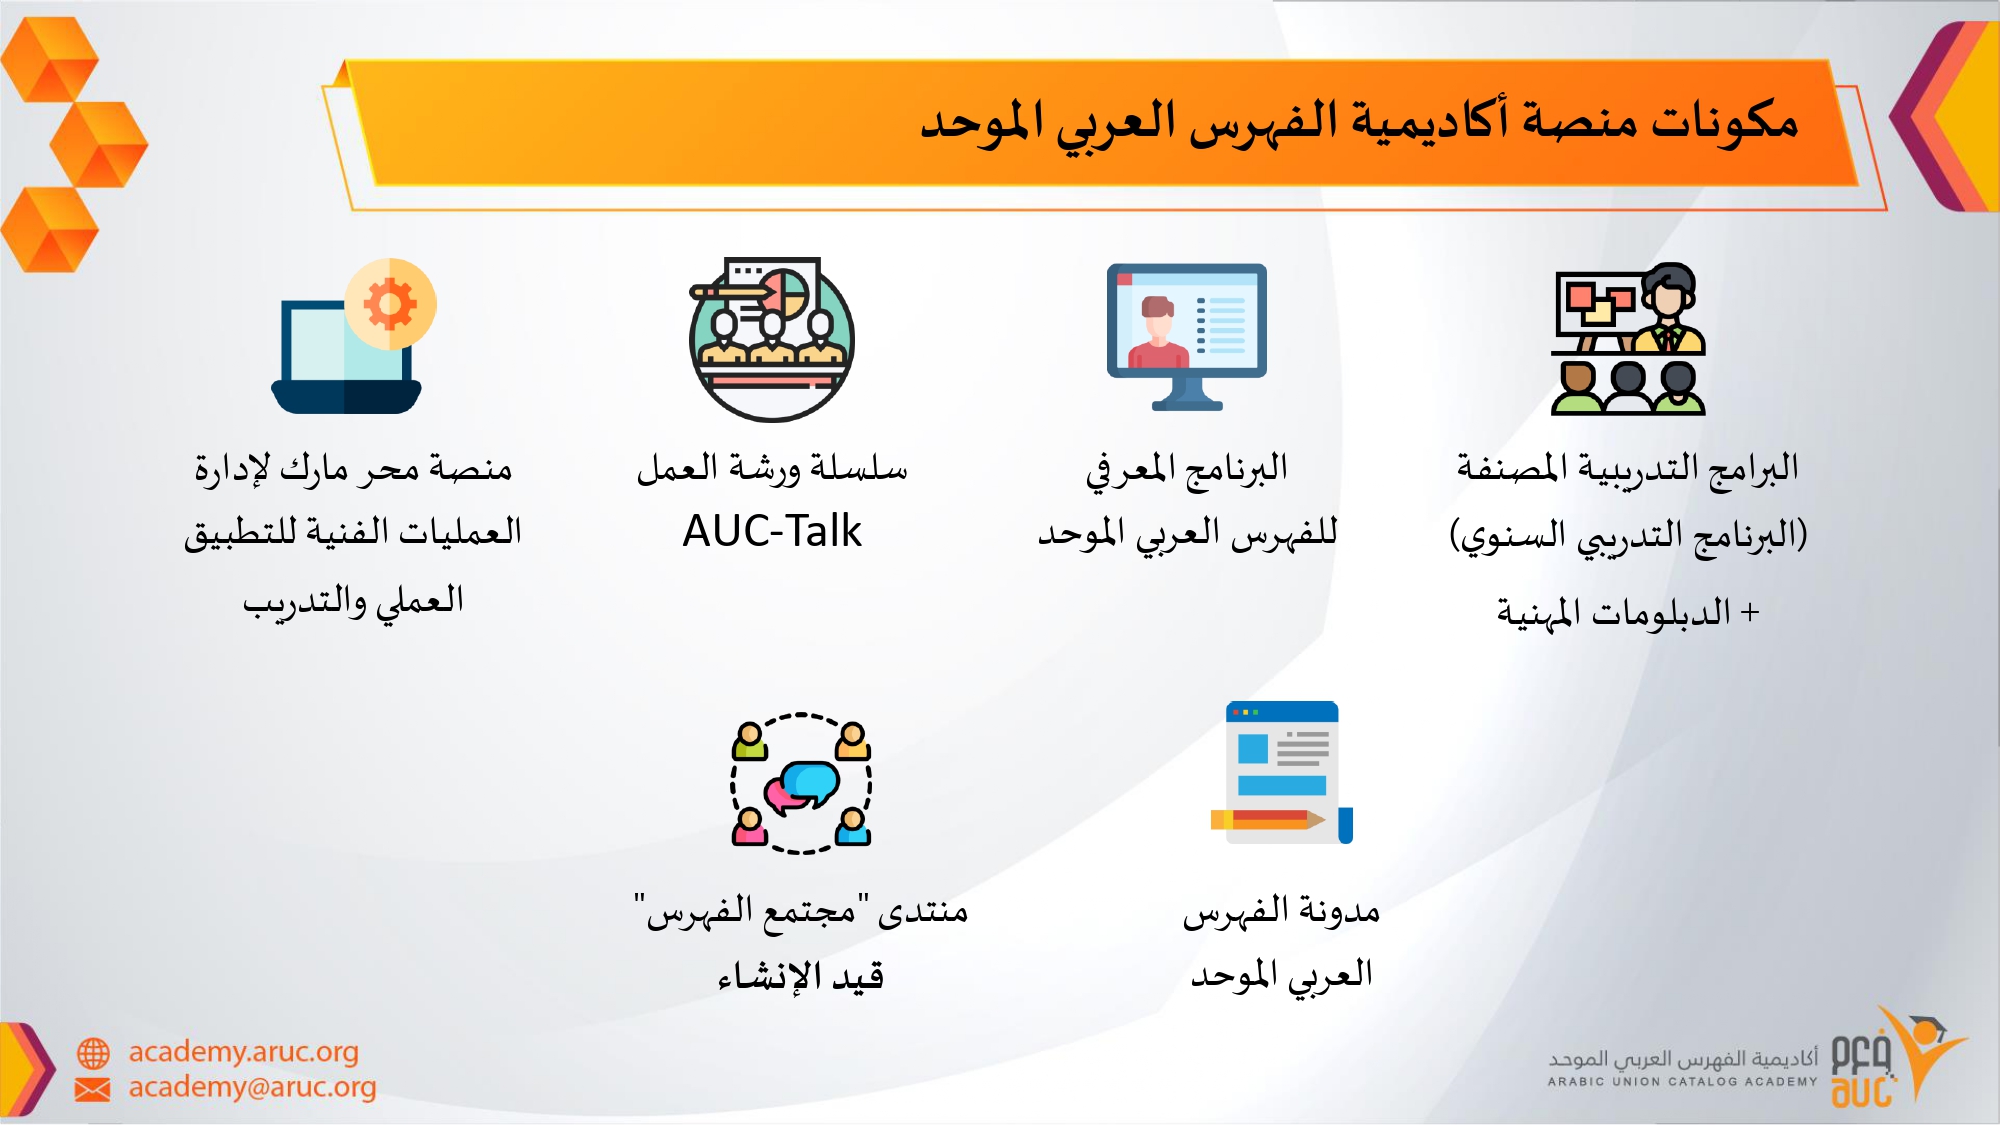 مكونات أكاديمية الفهرس العربي الموحد